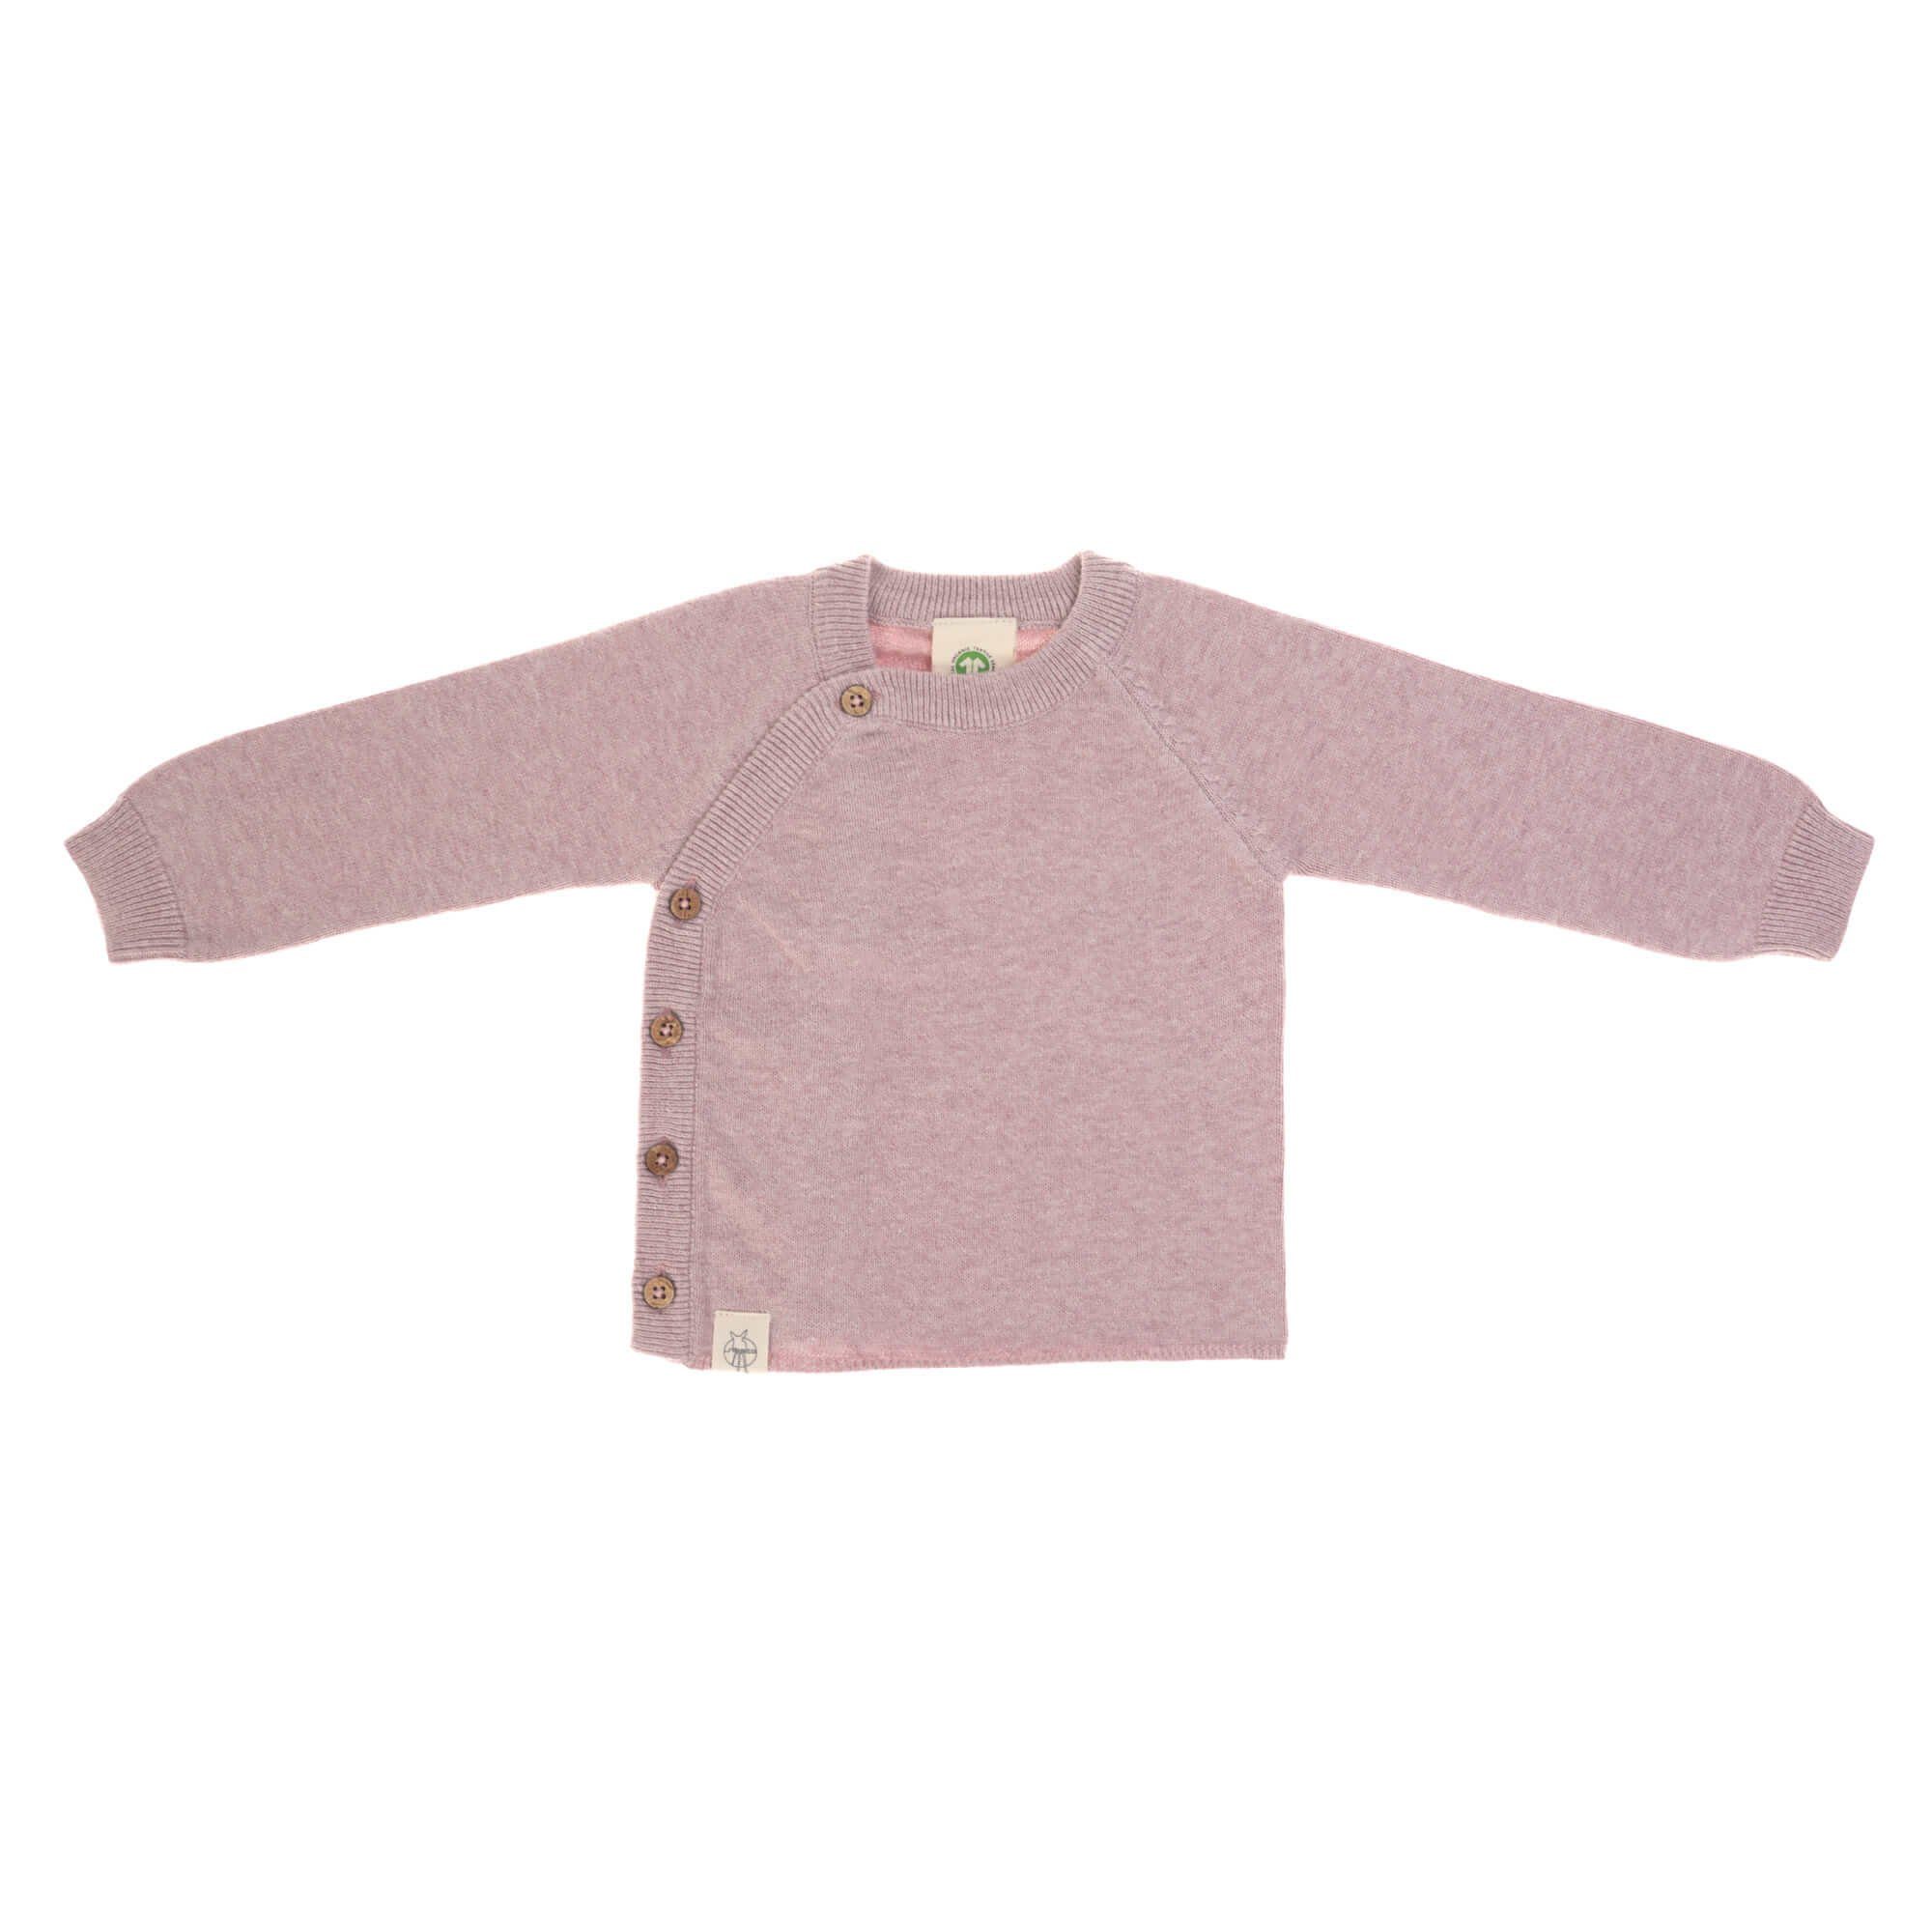 LÄSSIG Strickpullover Lässig Baby Pullover GOTS, Knitted Garden Explorer traumhaft weich mit Kokosnuss Knöpfen seitlich light pink